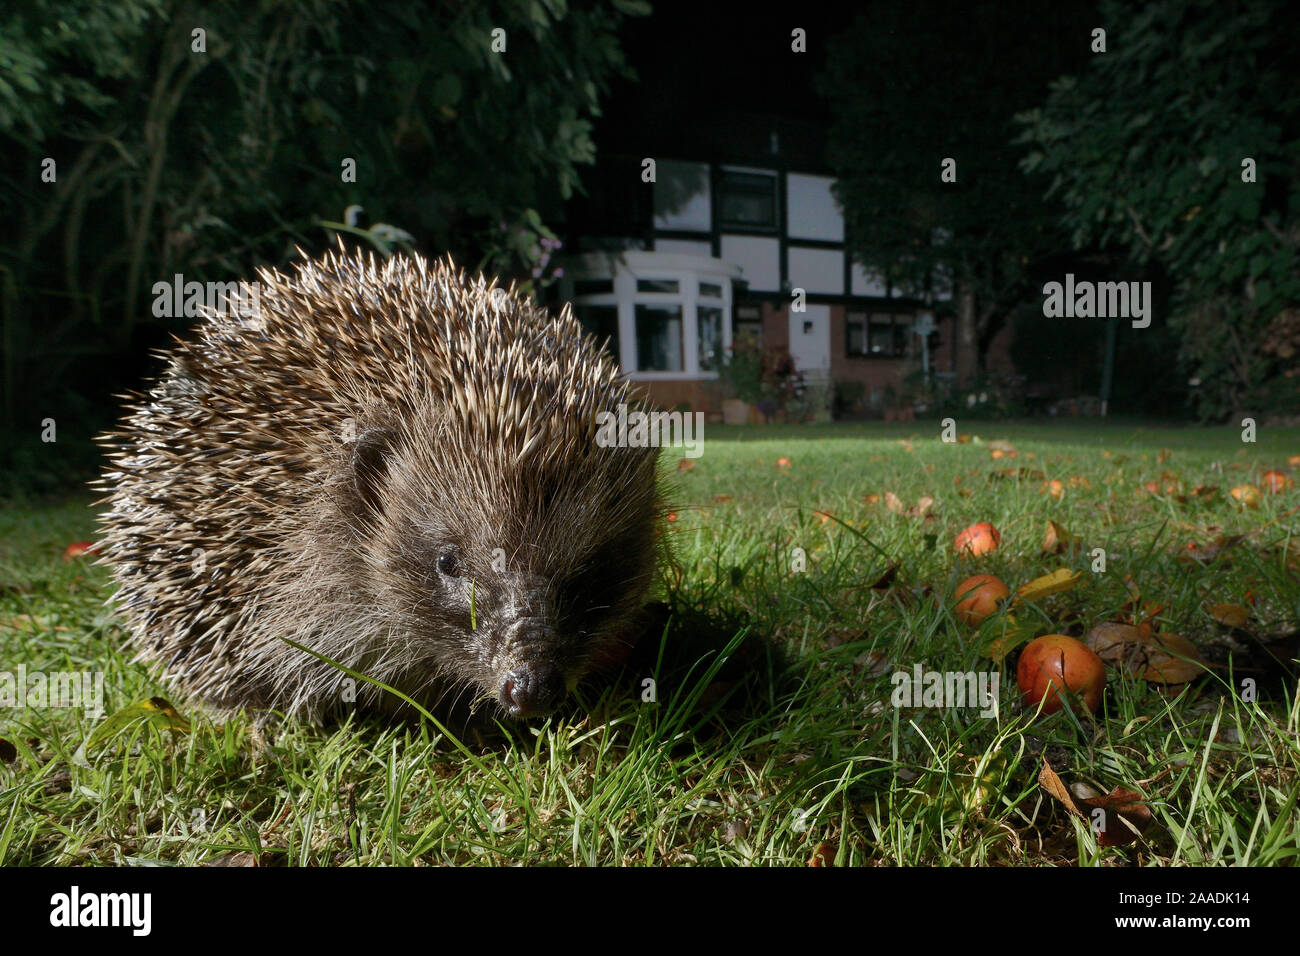 Hérisson (Erinaceus europaeus) sur une pelouse dans un jardin de banlieue la nuit, Chippenham, Wiltshire, Royaume-Uni, septembre. Prises avec une caméra à distance. Parution de la propriété. Banque D'Images